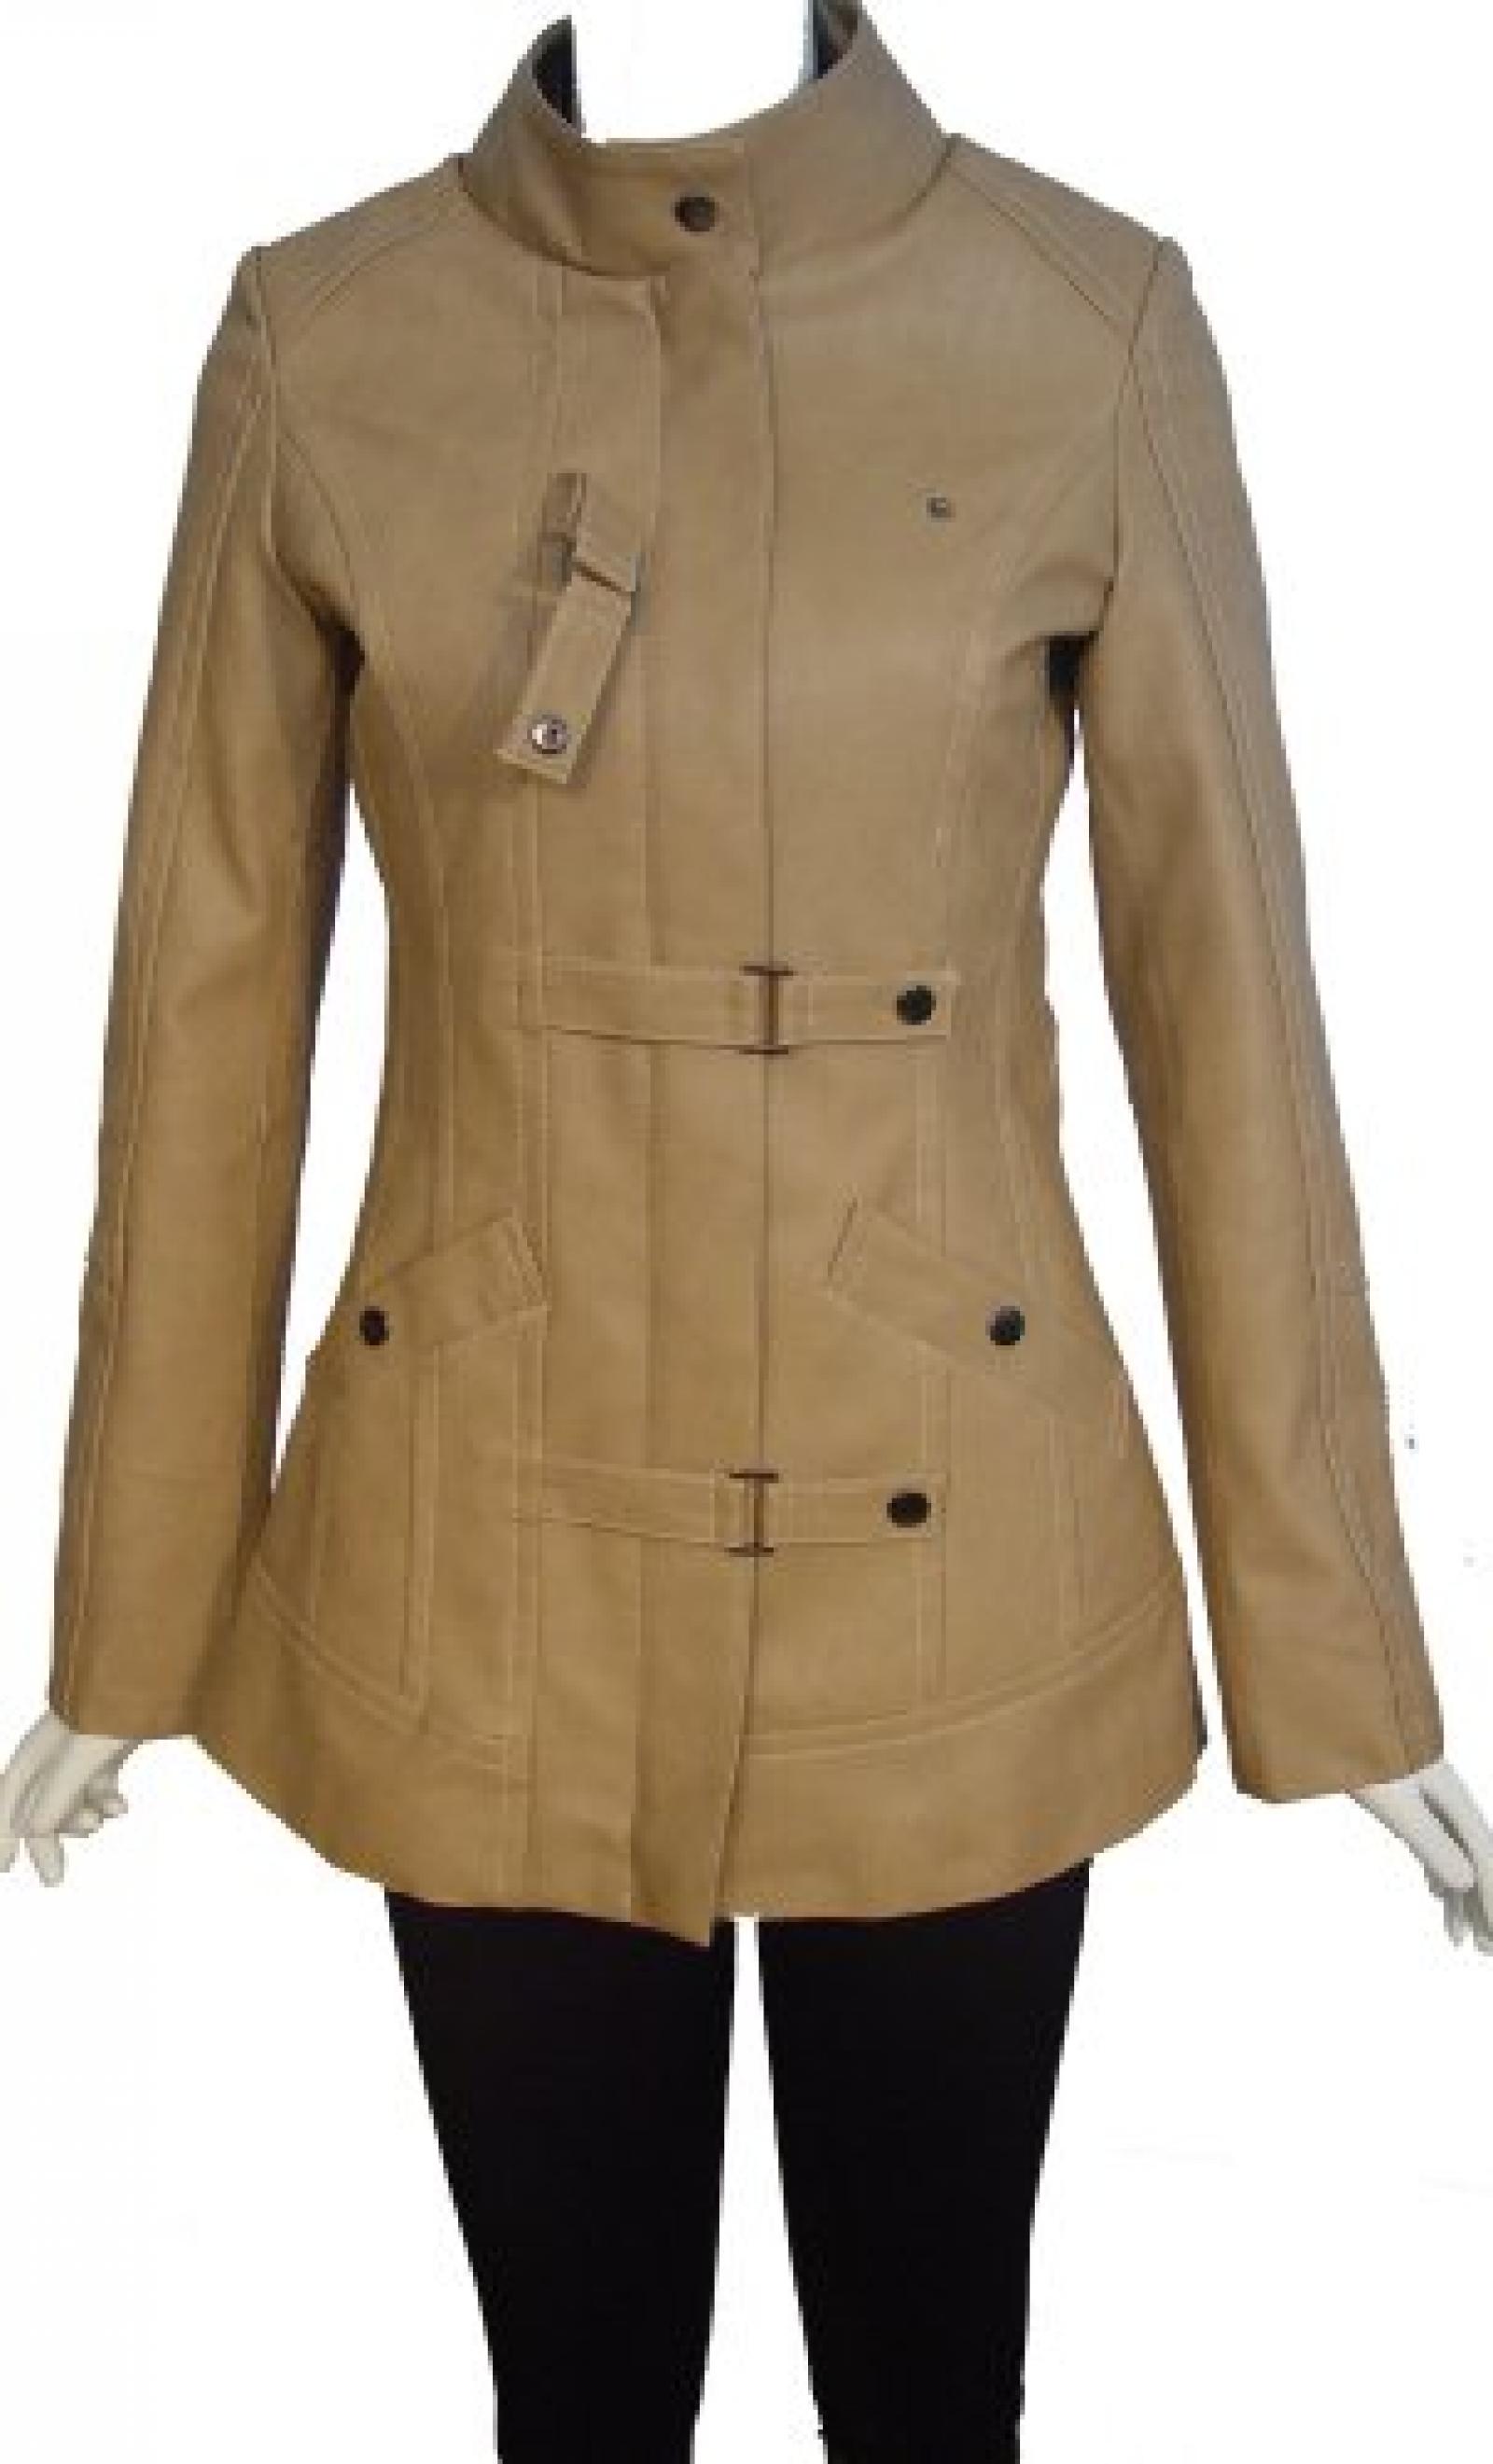 Nettailor Women PLUS SIZE 4200 Soft Leather Casual Jacket Zip Front Placket 